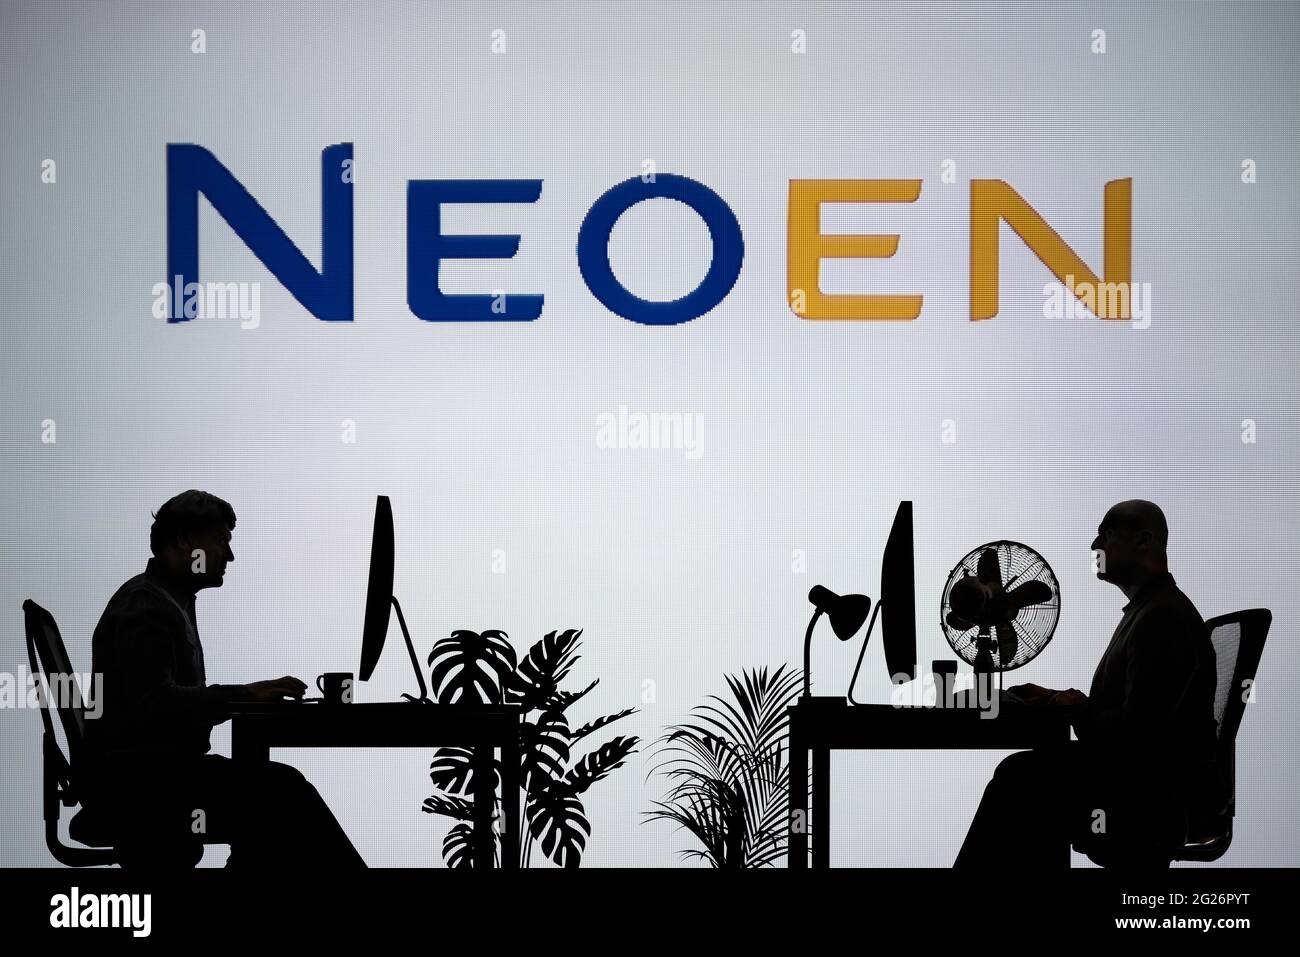 Le logo Neoen est visible sur un écran LED en arrière-plan tandis que deux personnes silhouetées travaillent dans un environnement de bureau (usage éditorial uniquement) Banque D'Images